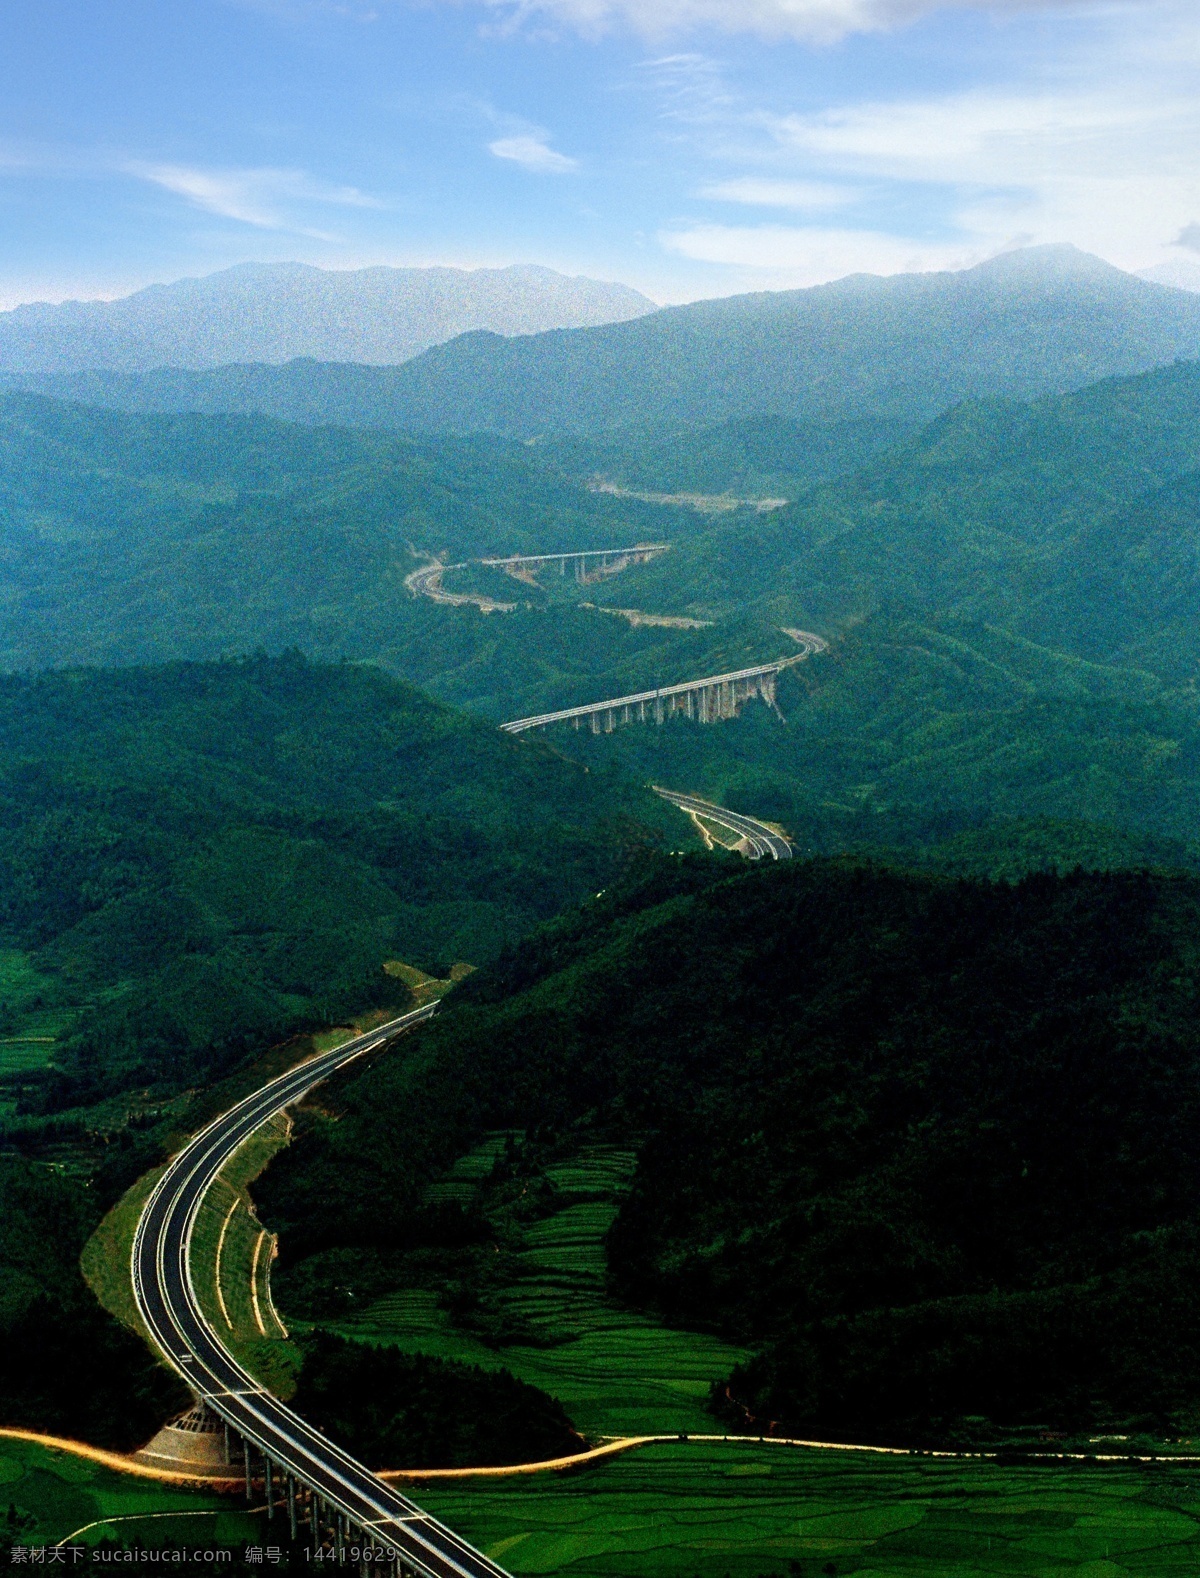 航拍 高速公路 高速铁路 高架桥 绿山 蓝天 天空 远山 旅游摄影 国内旅游 摄影图库